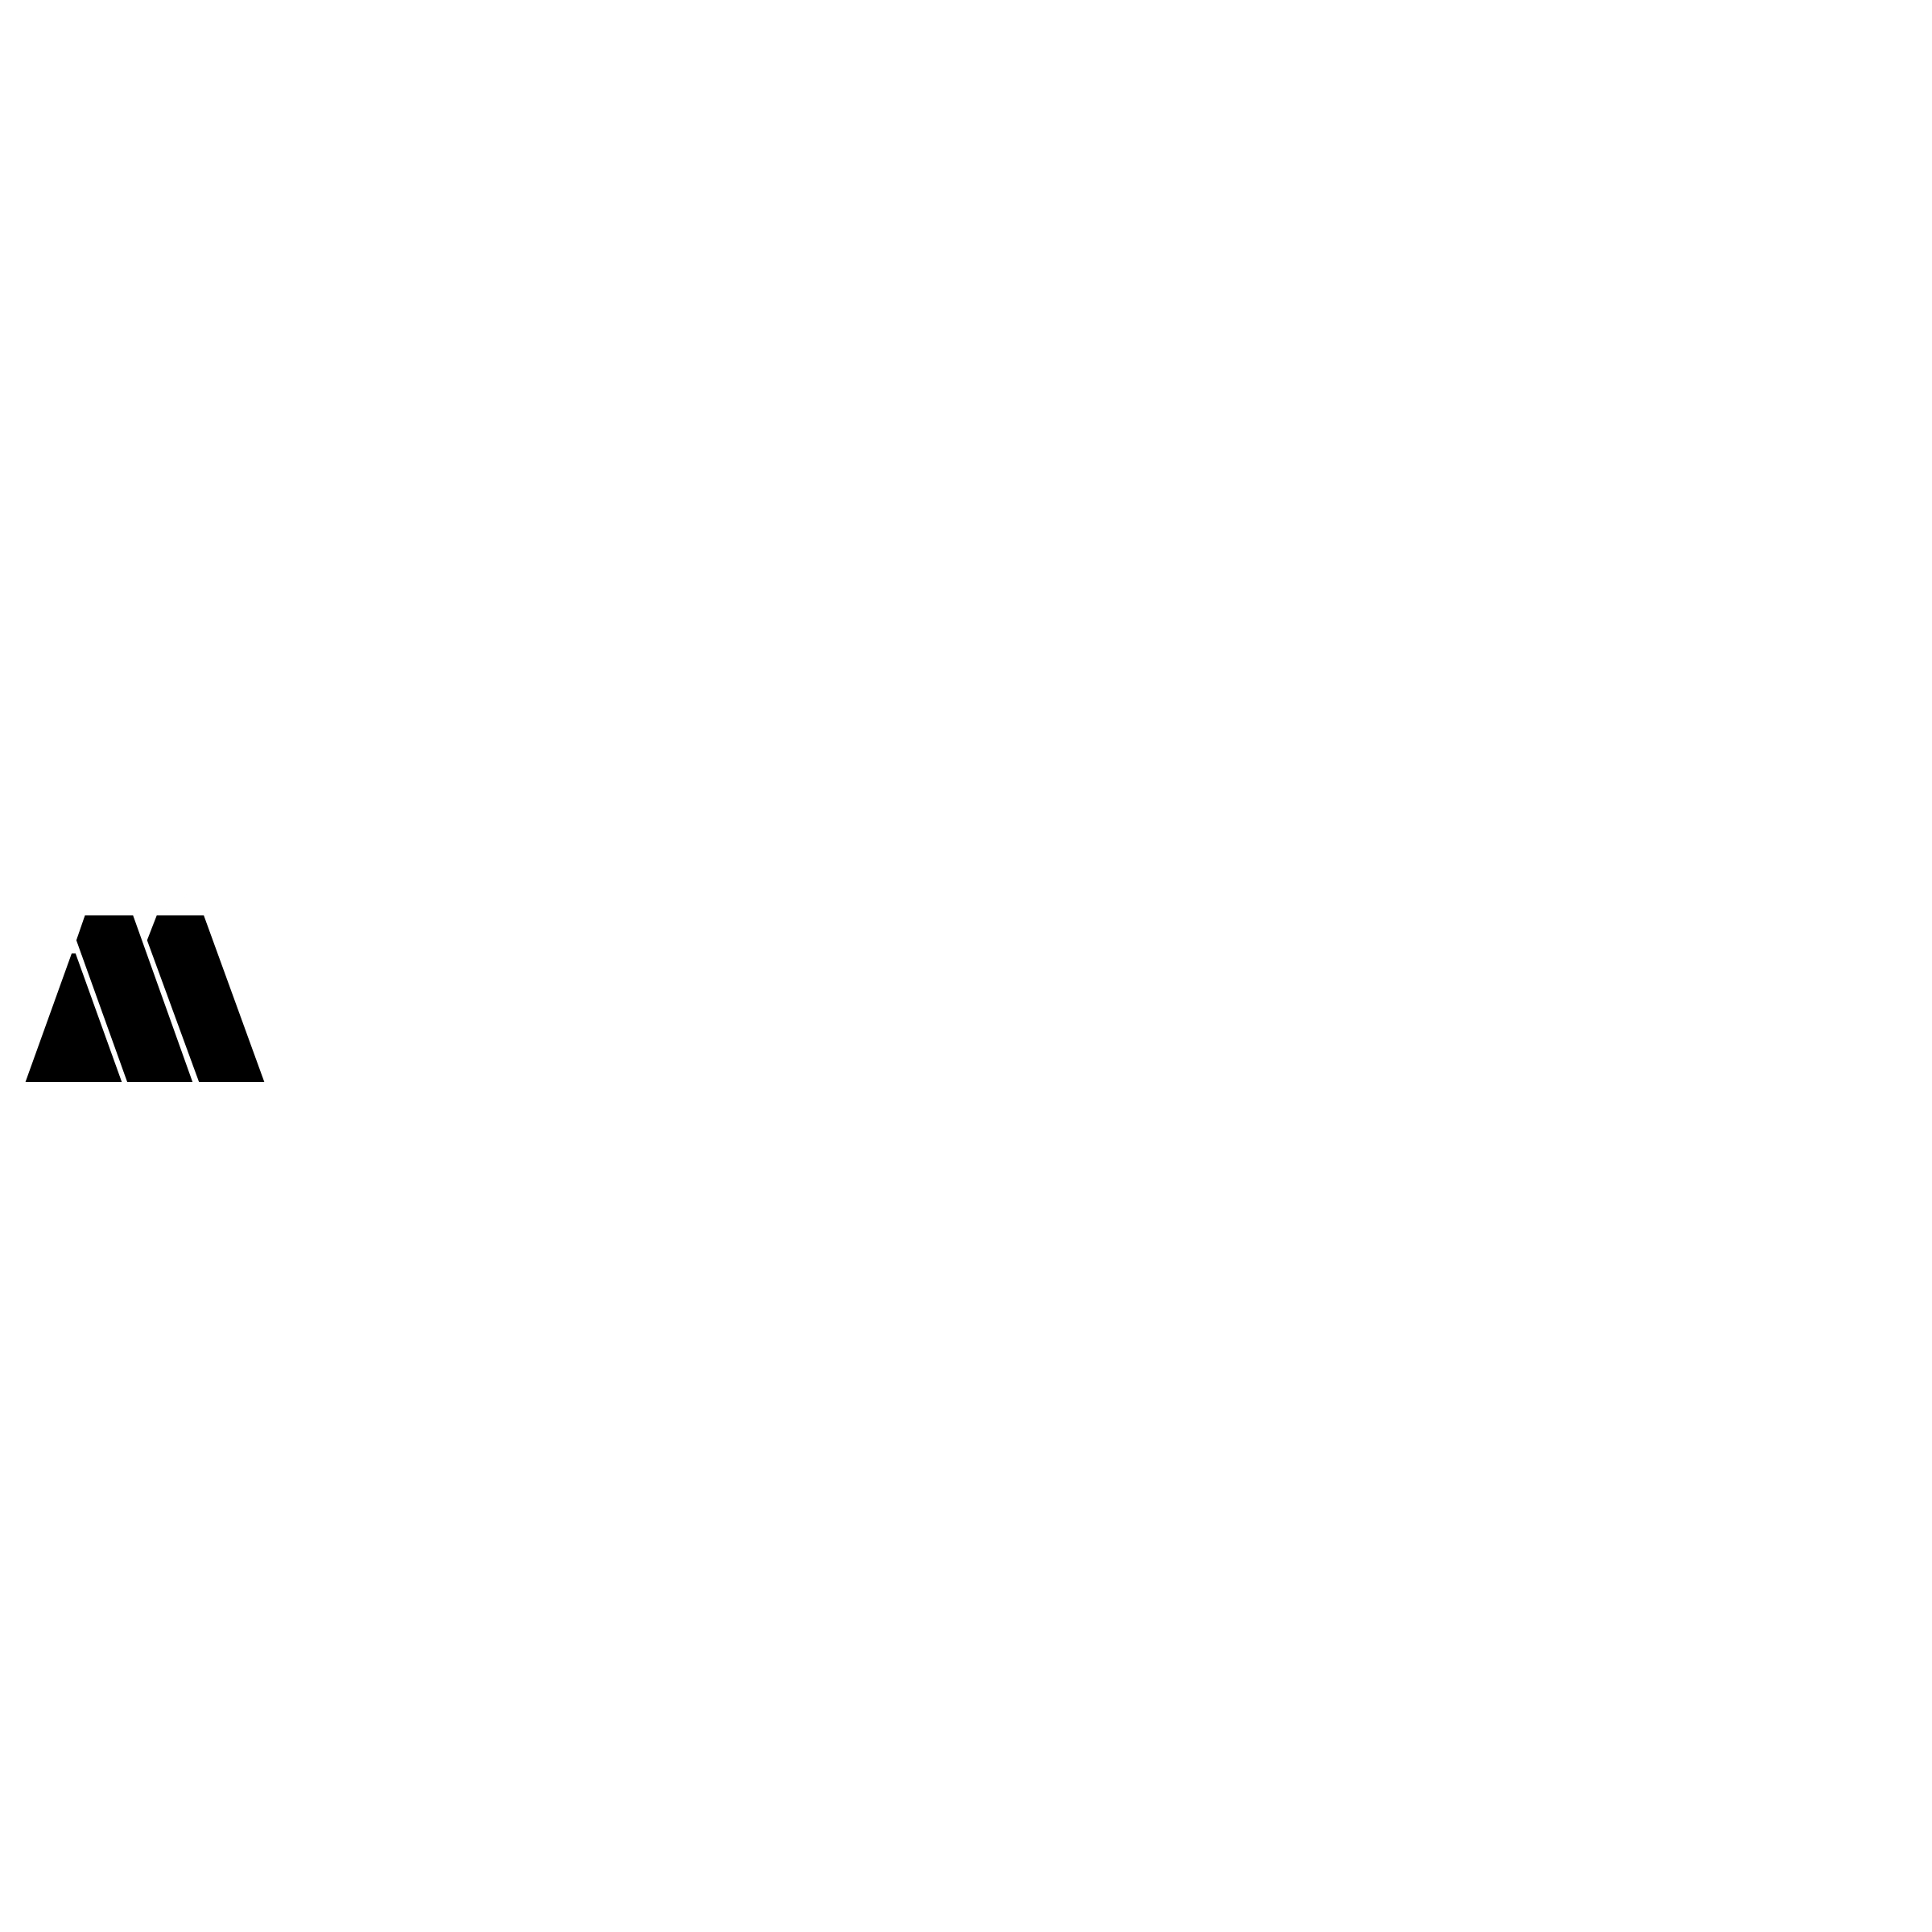 Styer Logo - Magna Steyr Logo PNG Transparent & SVG Vector - Freebie Supply